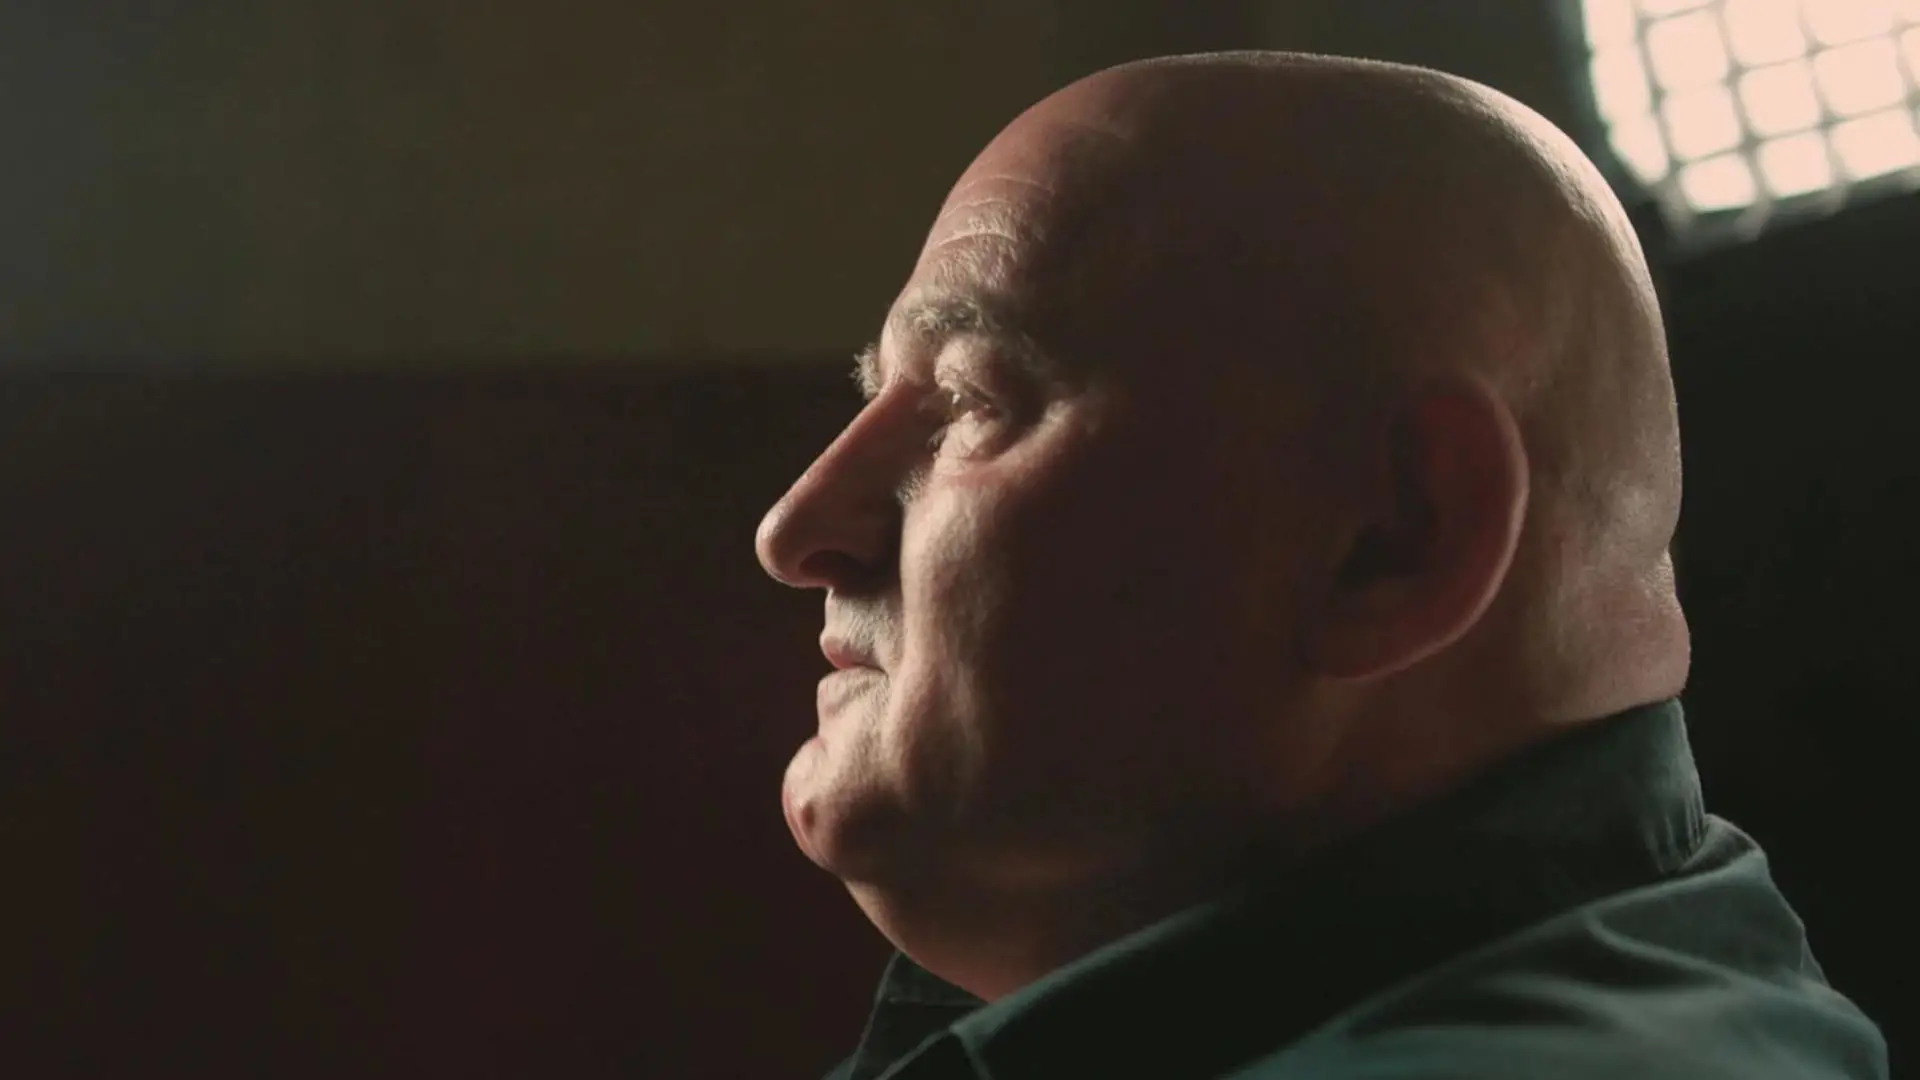 "Treći život": dokumentarni film koji priča o životu nakon zatvora